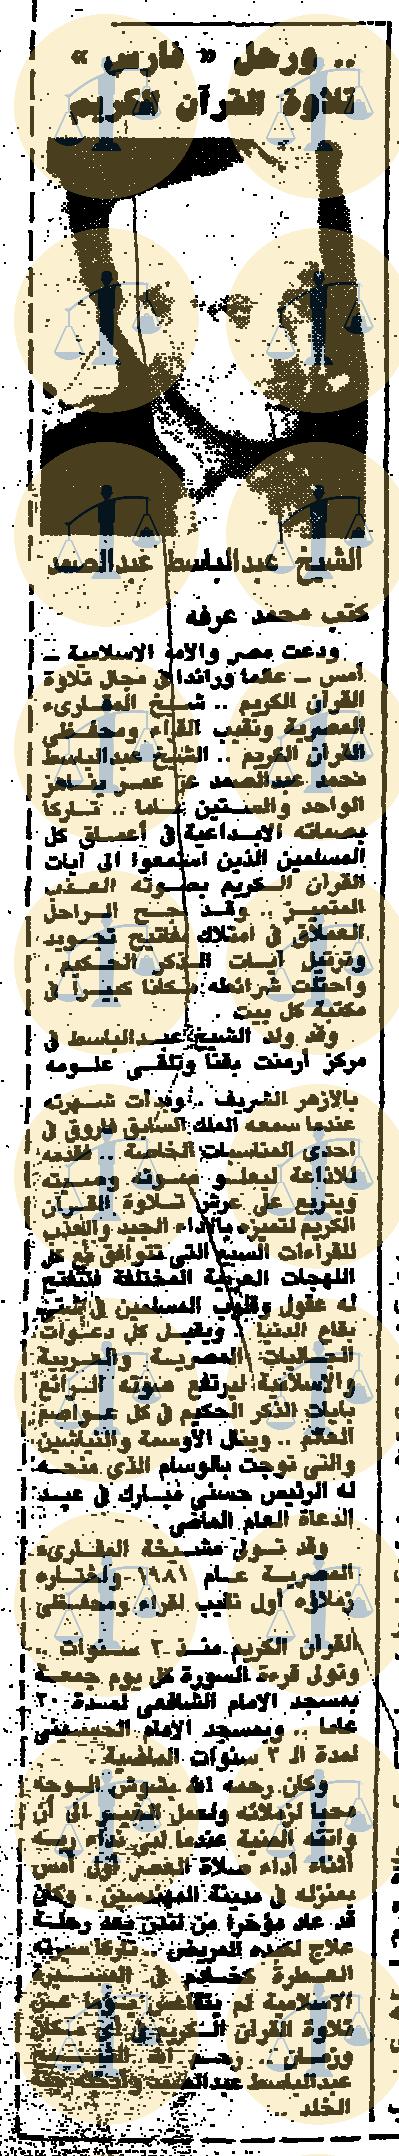 خبر وفاة الشيخ عبدالباسط عبدالصمد، نُشِر يوم 1 - 12 - 1988م - الأخبار، ص6